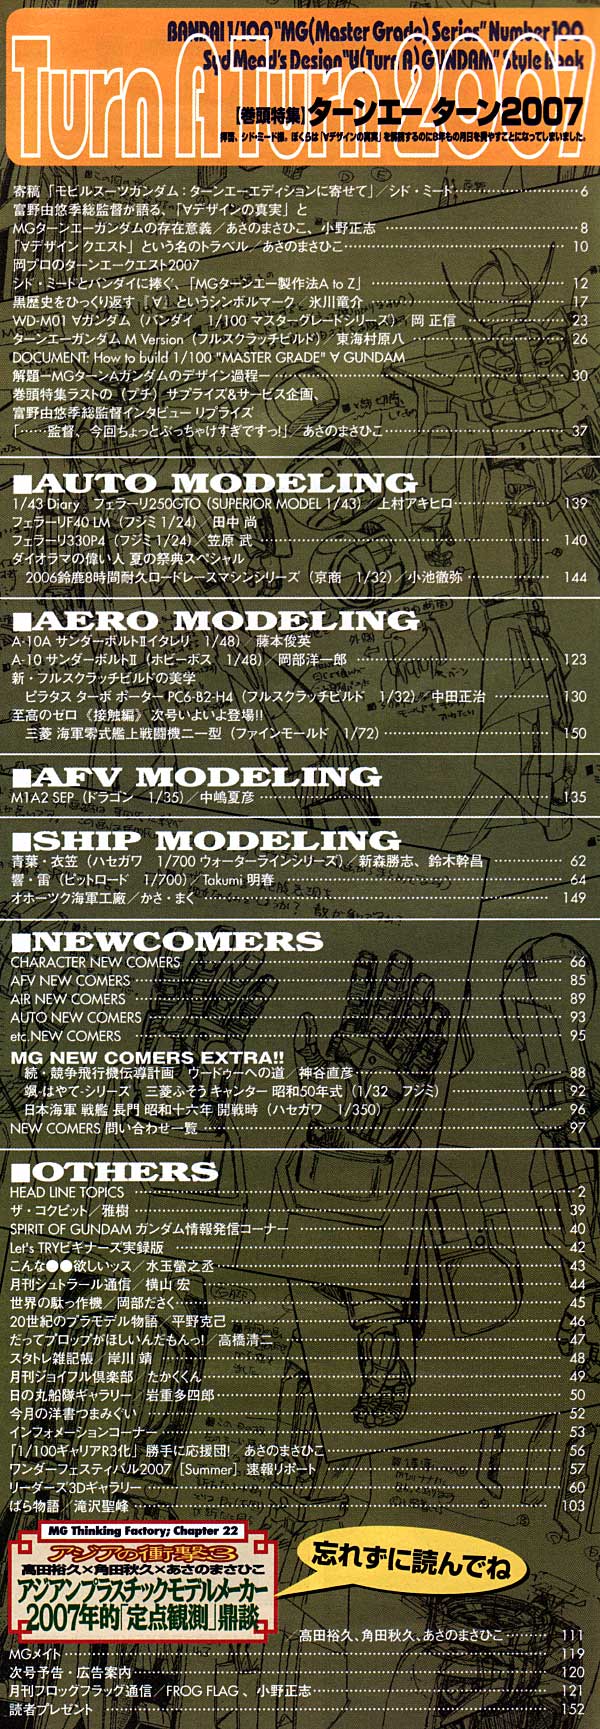 モデルグラフィックス 2007年10月号 雑誌 (大日本絵画 月刊 モデルグラフィックス No.275) 商品画像_1